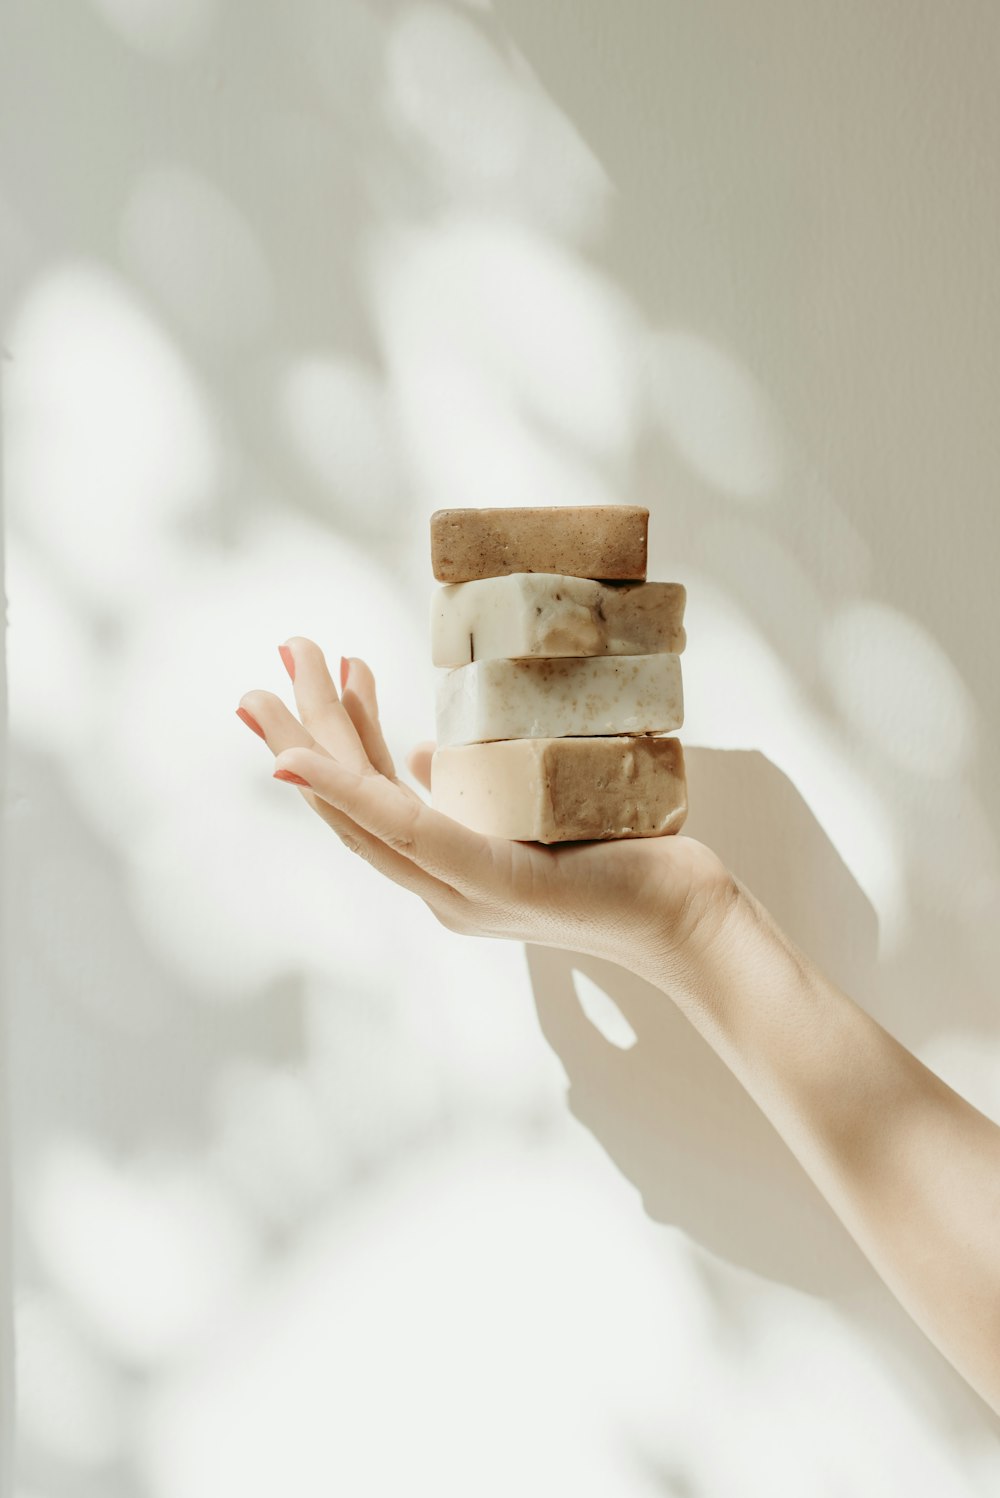 la main d’une femme tenant une pile de pains de savon